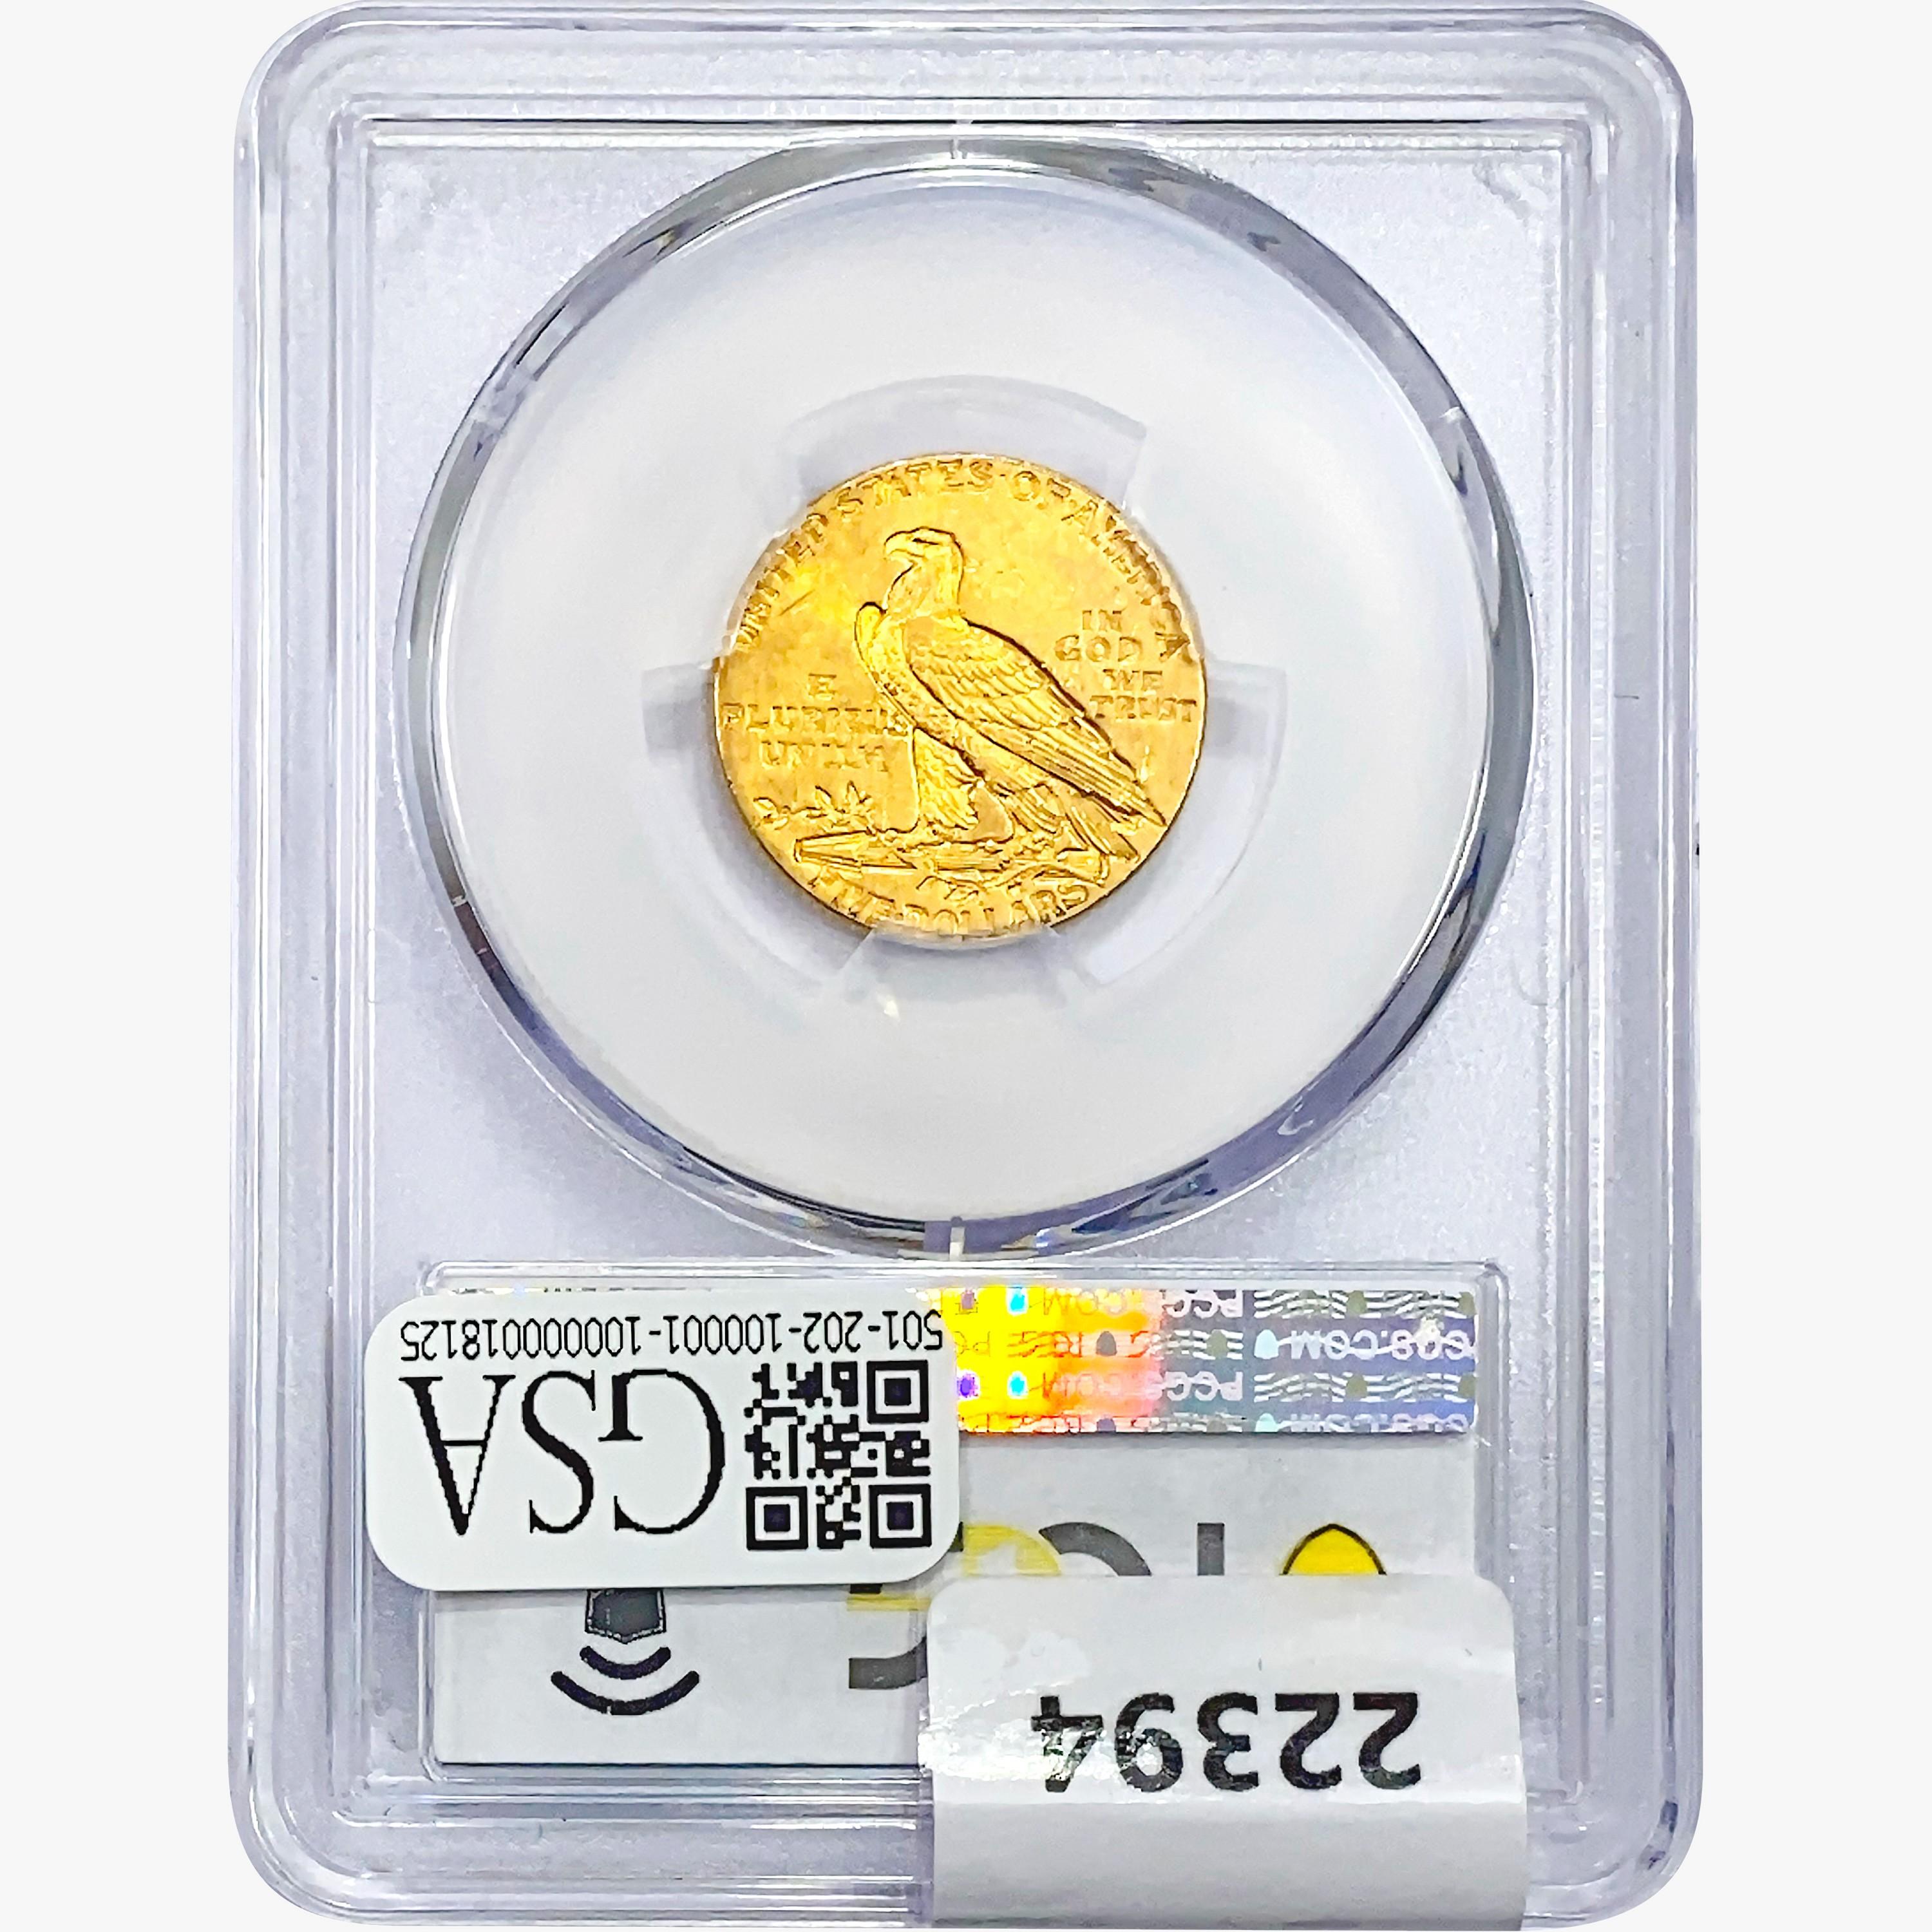 1913 $5 Gold Half Eagle PCGS AU58